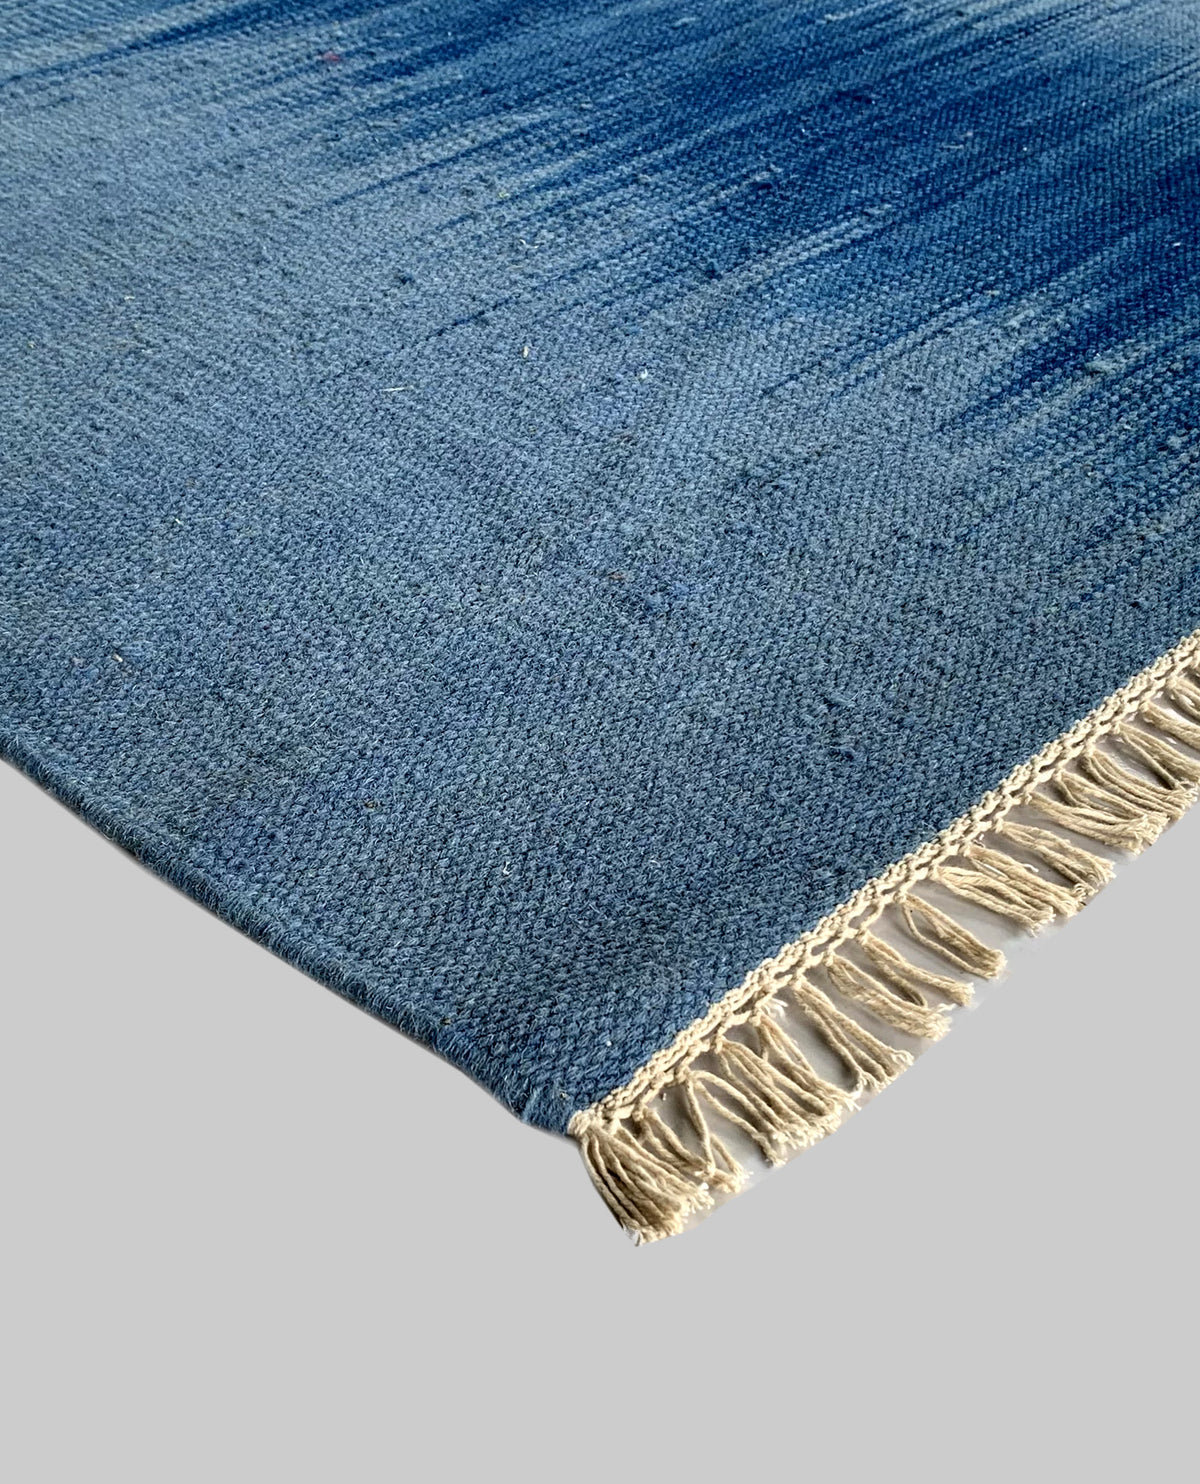 Rugslane Blue Color Plain Durry Carpet 4.0ft X 6.0ft